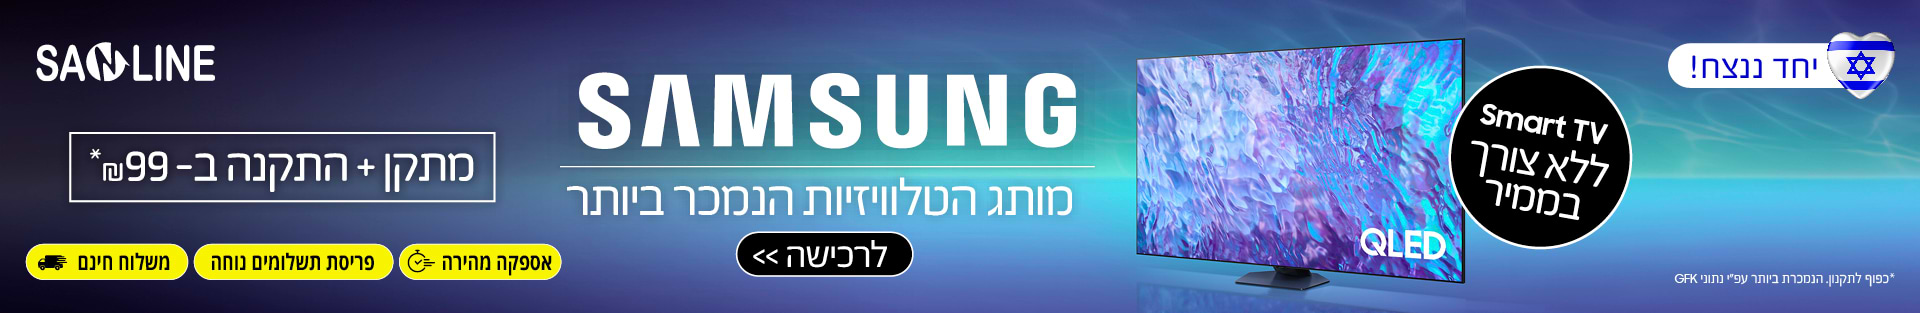 Samsung מותג הטלוויזיות הנמכר ביותר מתקן + התקנה ב99 ש